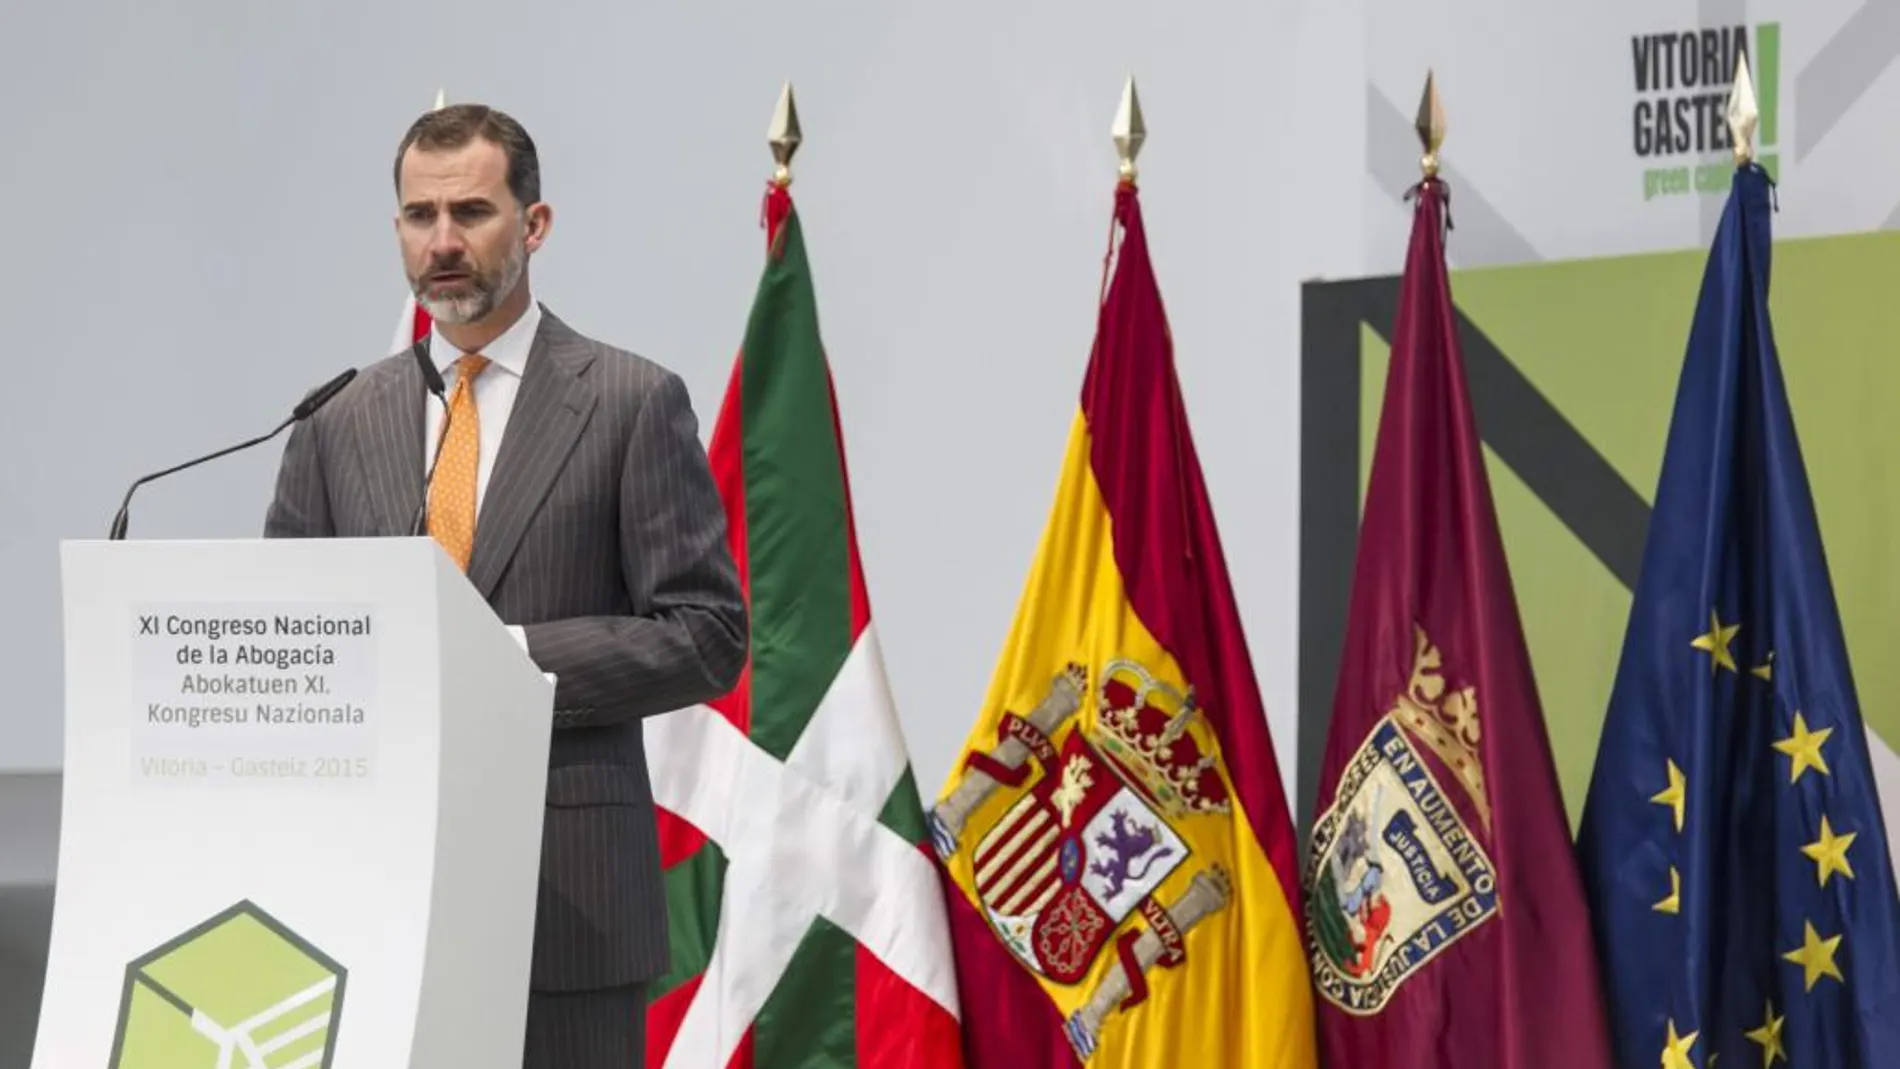 El Rey durante su intervención en la inauguración hoy en Vitoria del XI Congreso Nacional de la Abogacía